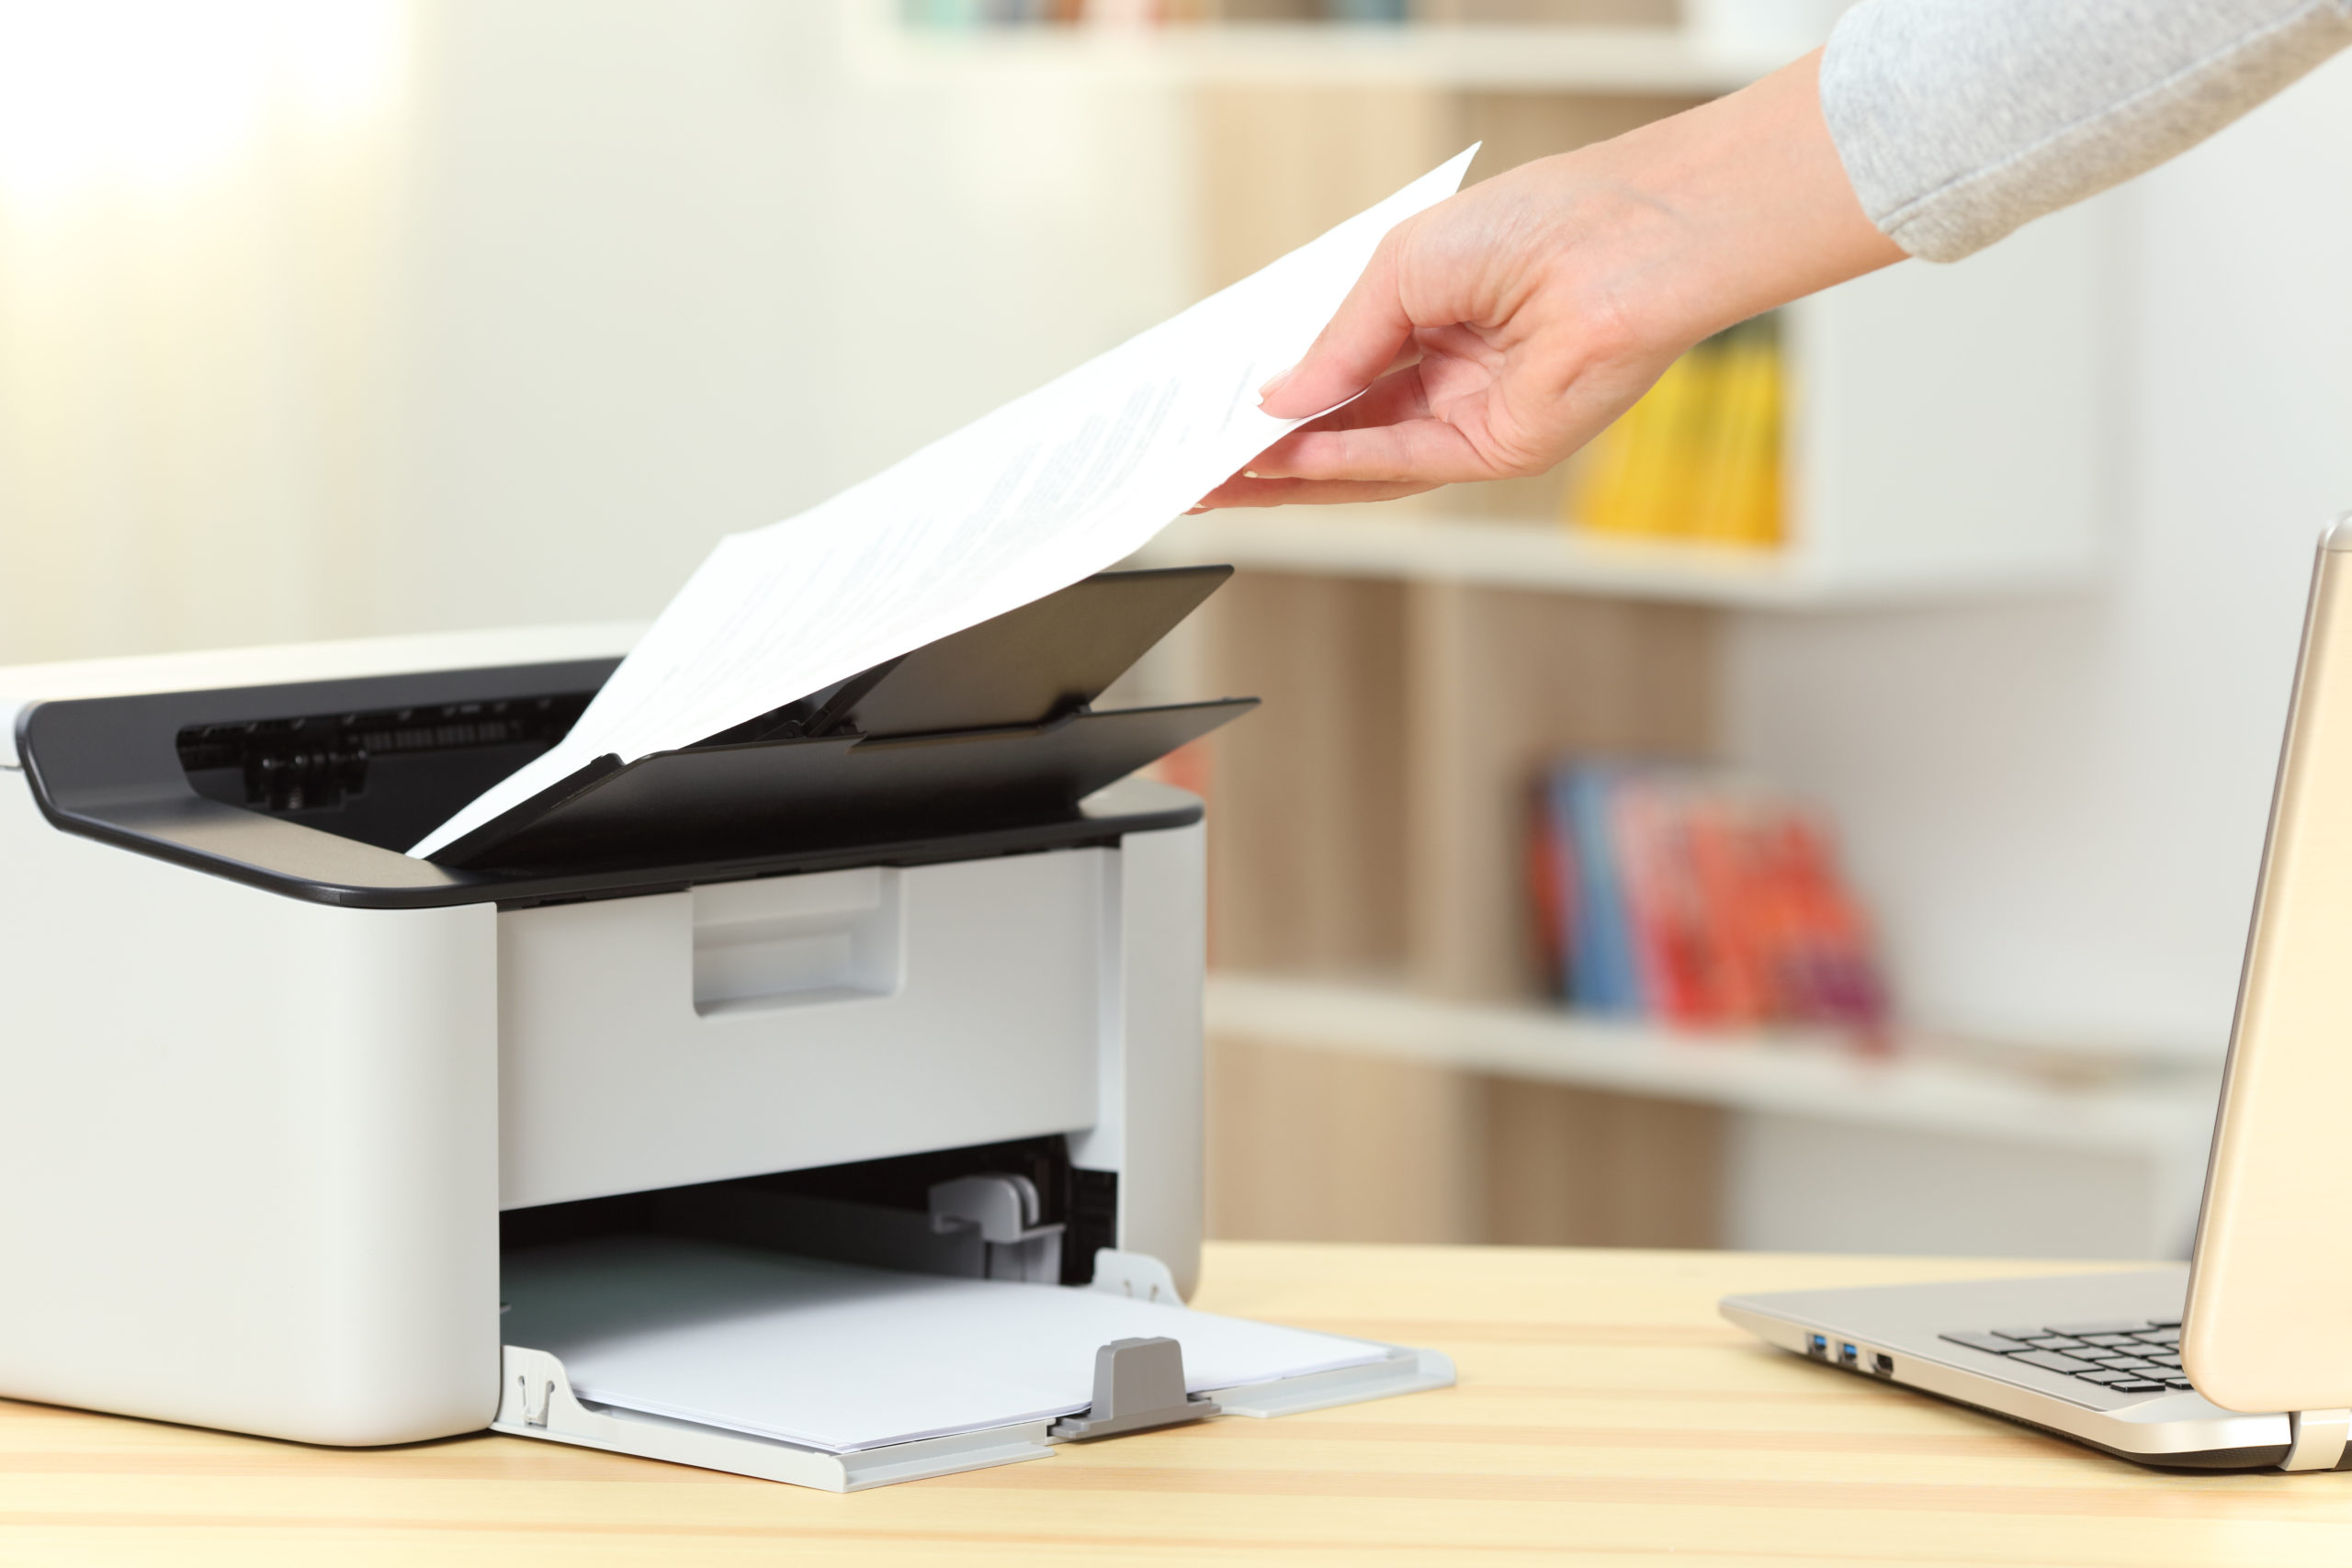 Cuáles son las ventajas de tener una impresora en casa?